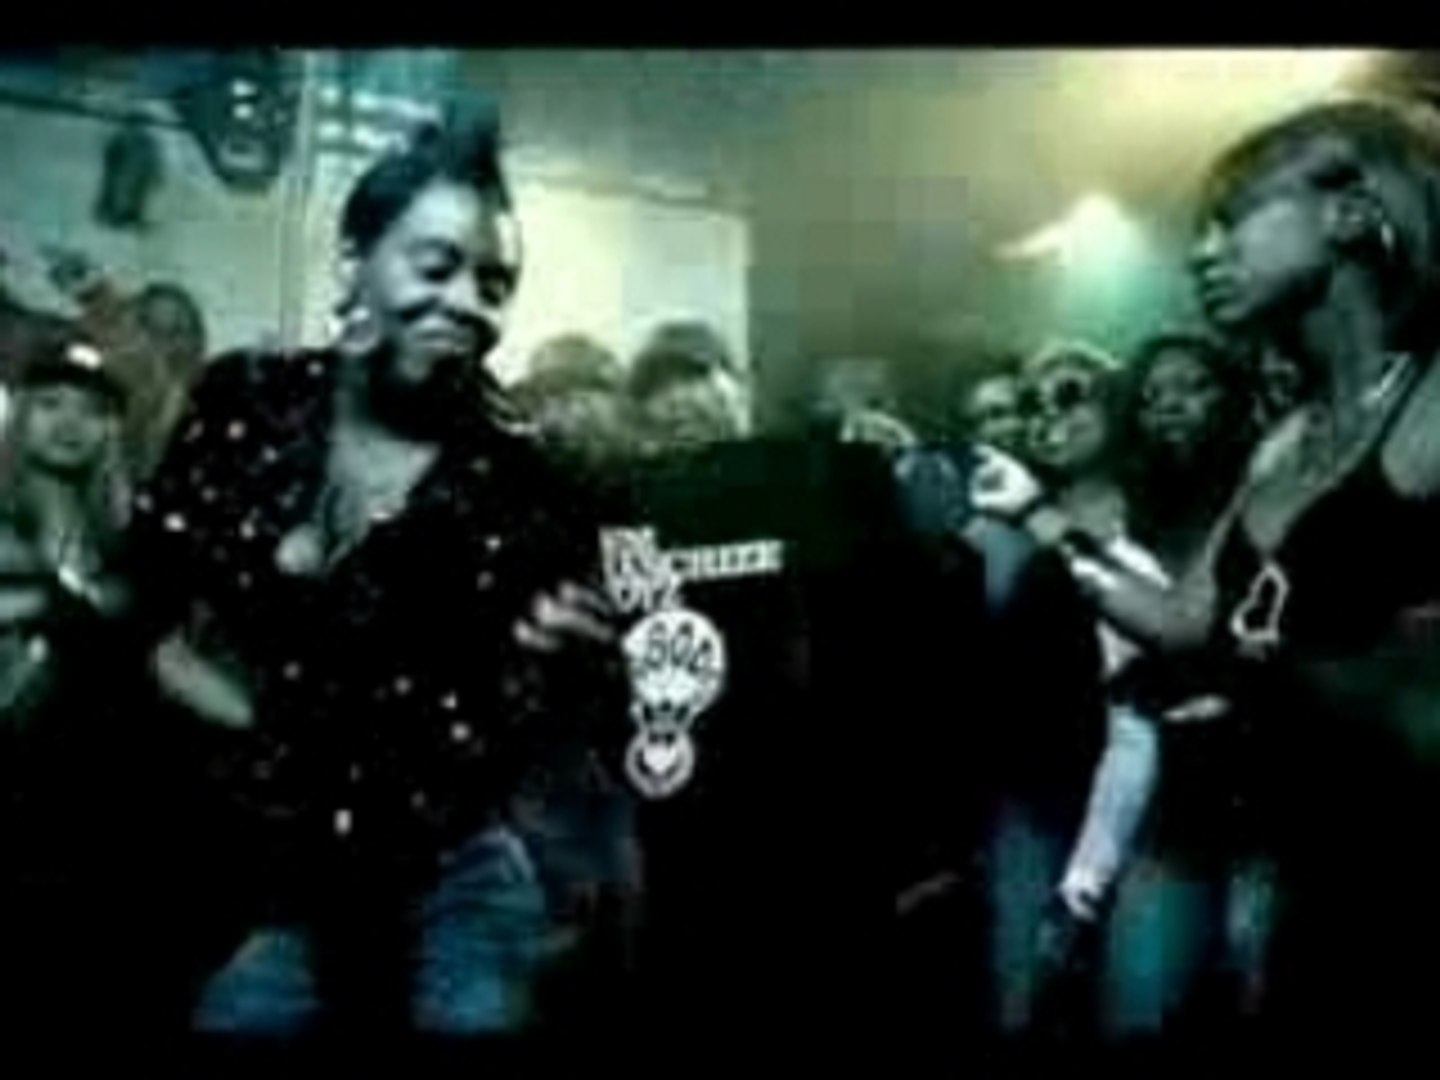 Dem Franchize Boyz_Lean Wit It, Rock Wit It [Adi] - video Dailymotion